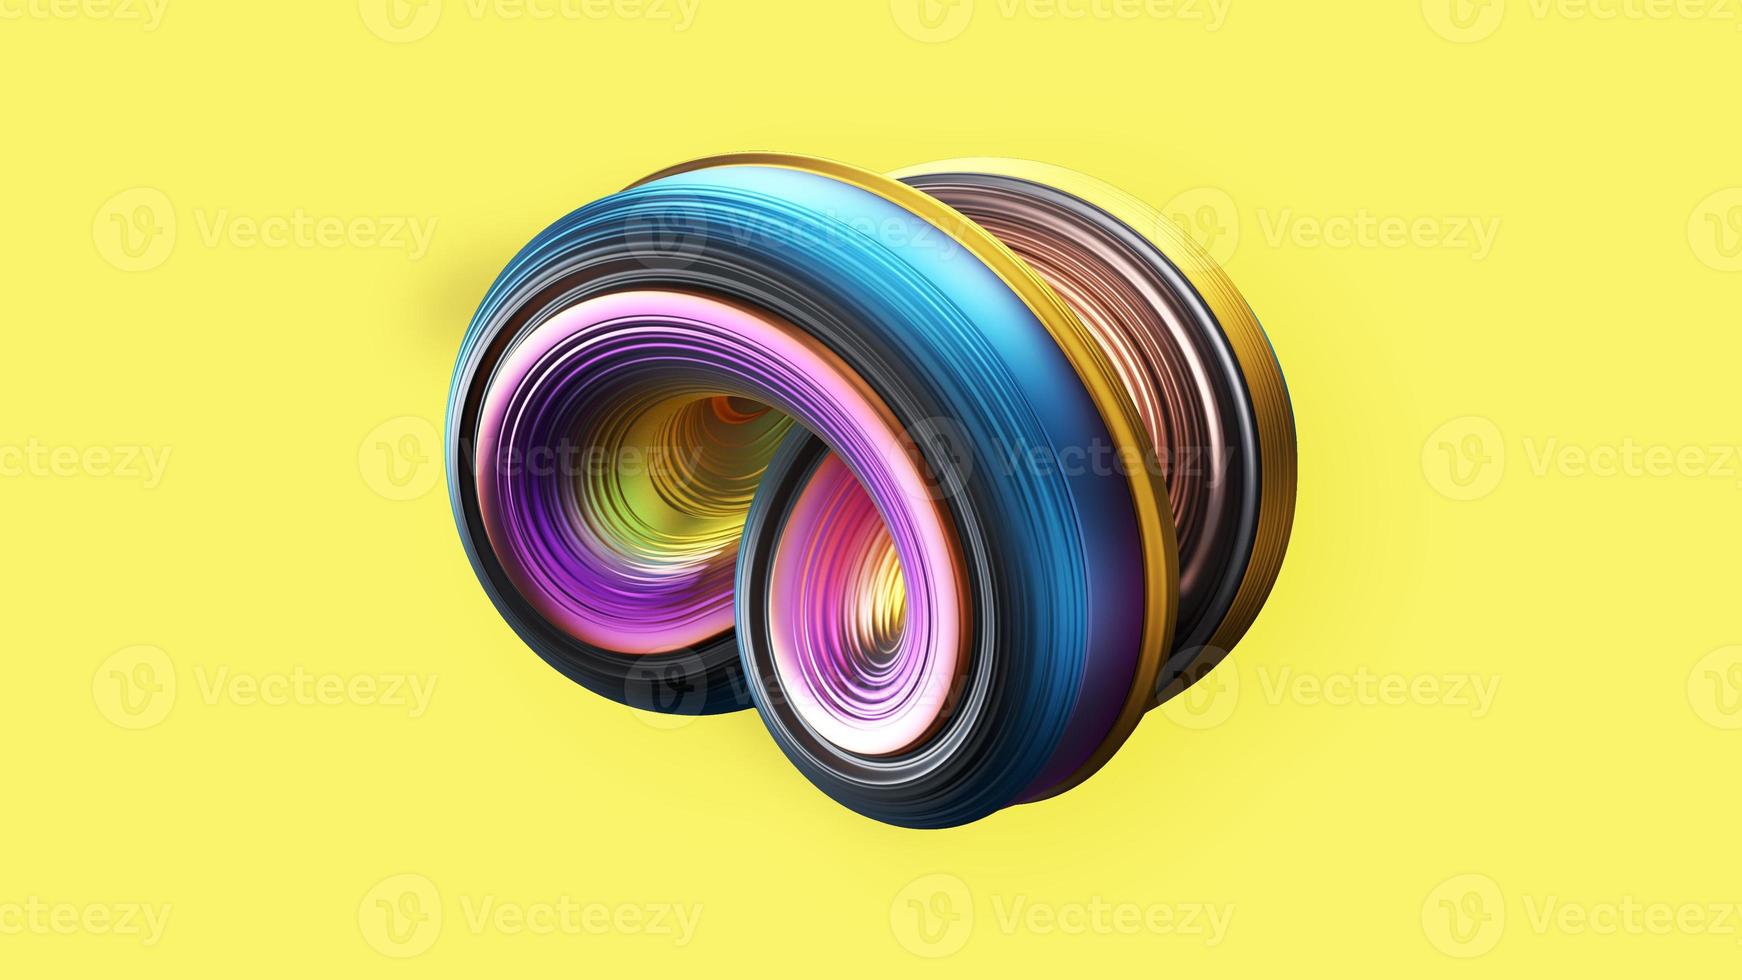 abstrakt 3d spiralobjekt på gul bakgrund foto